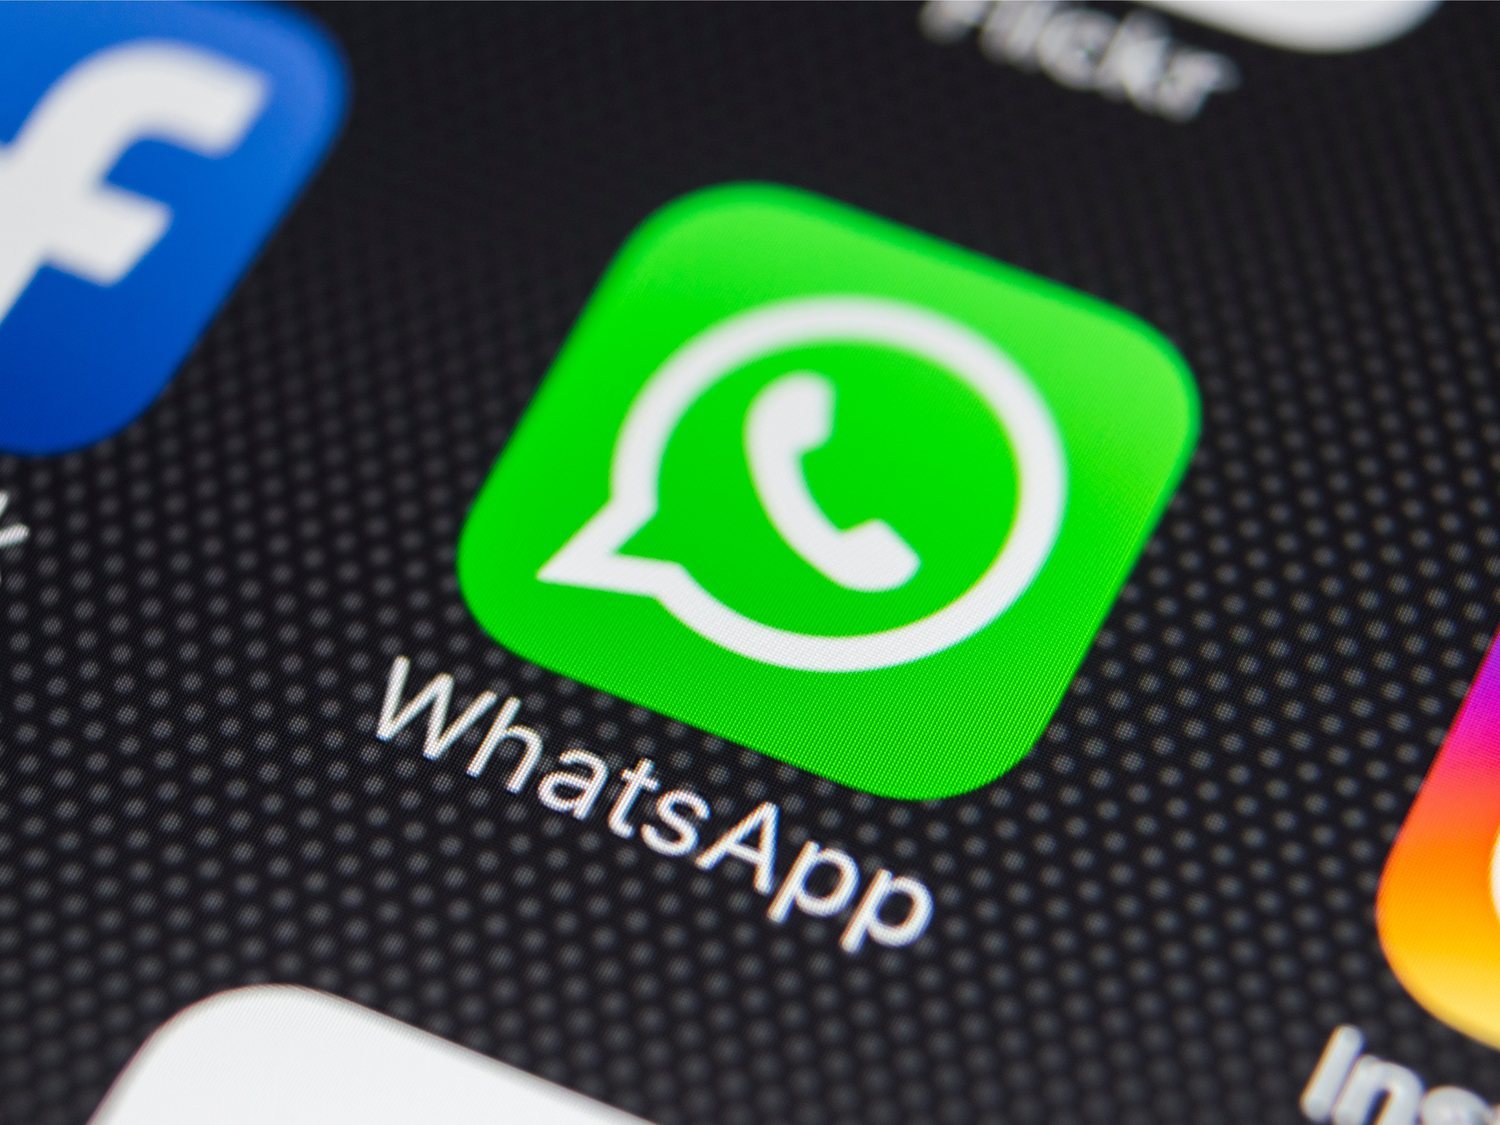 Nueva función en WhatsApp: mensajes que se autodestruyen en el plazo indicado